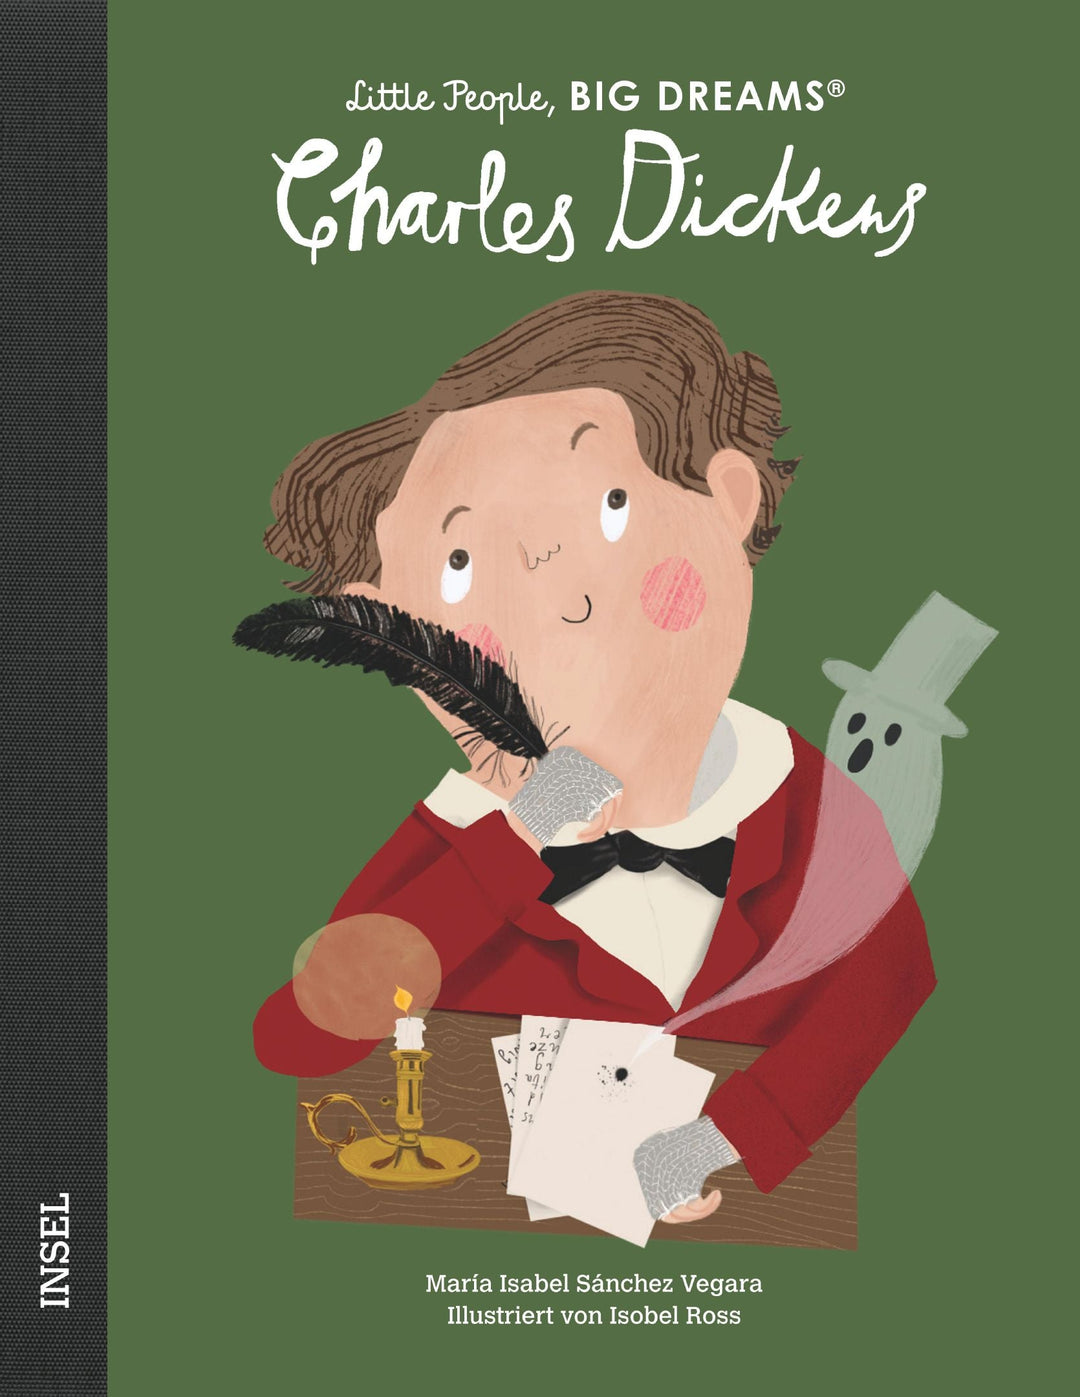 Insel Verlag Bilderbuch Little People, Big Dreams auf Deutsch: Charles Dickens